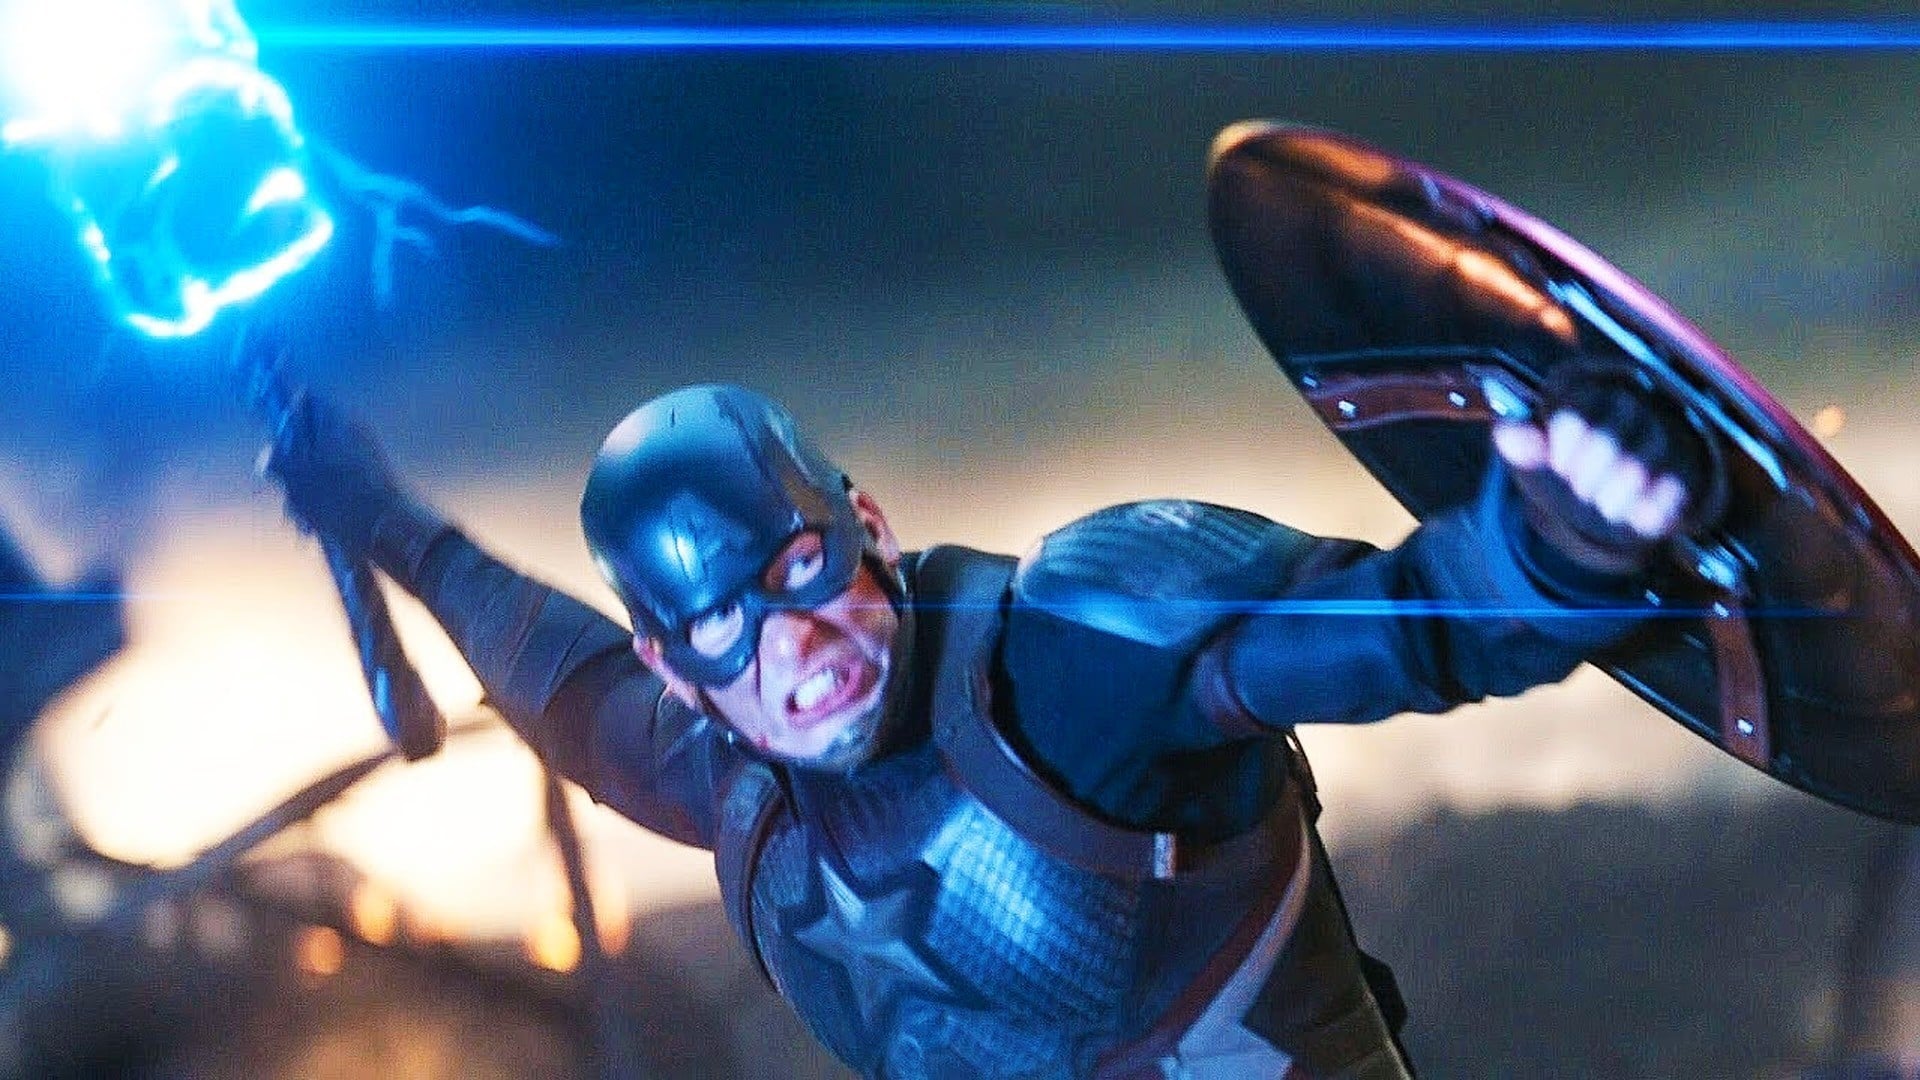 Captain America v Avengers: Endgame